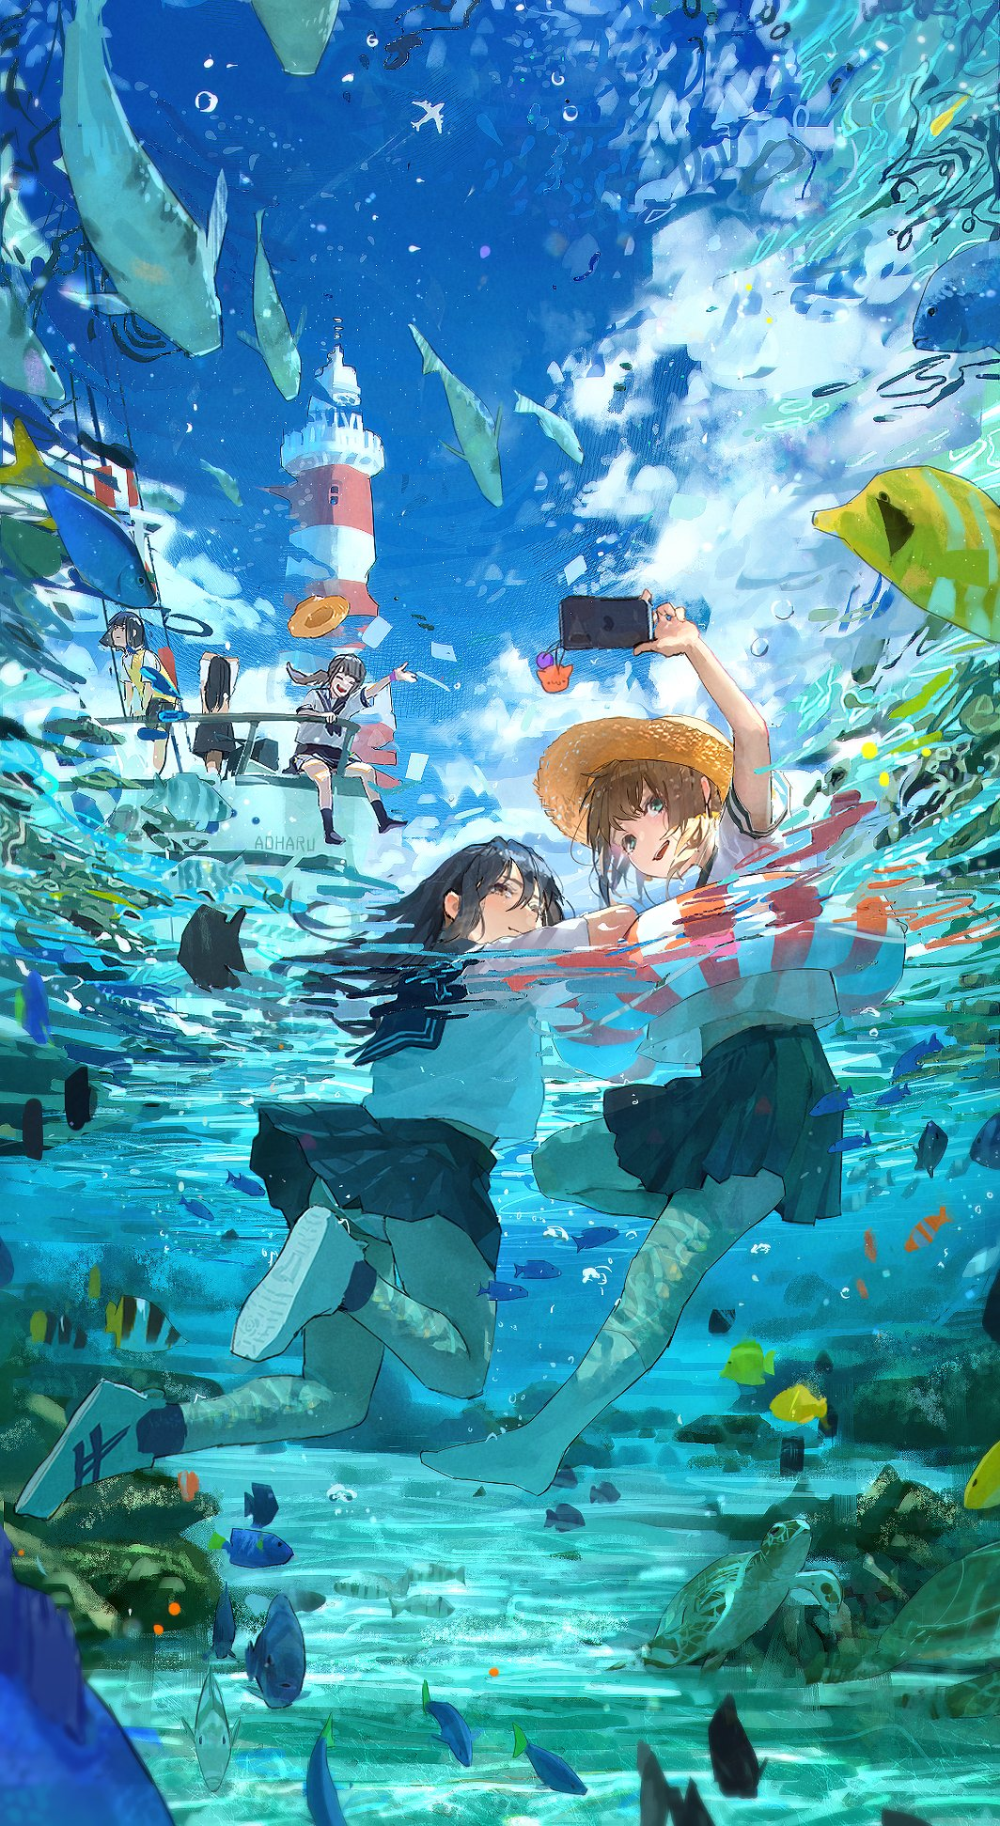 トマ斗/toma To On Twitter. Anime Scenery Wallpaper, Anime Wallpaper, Anime Scenery